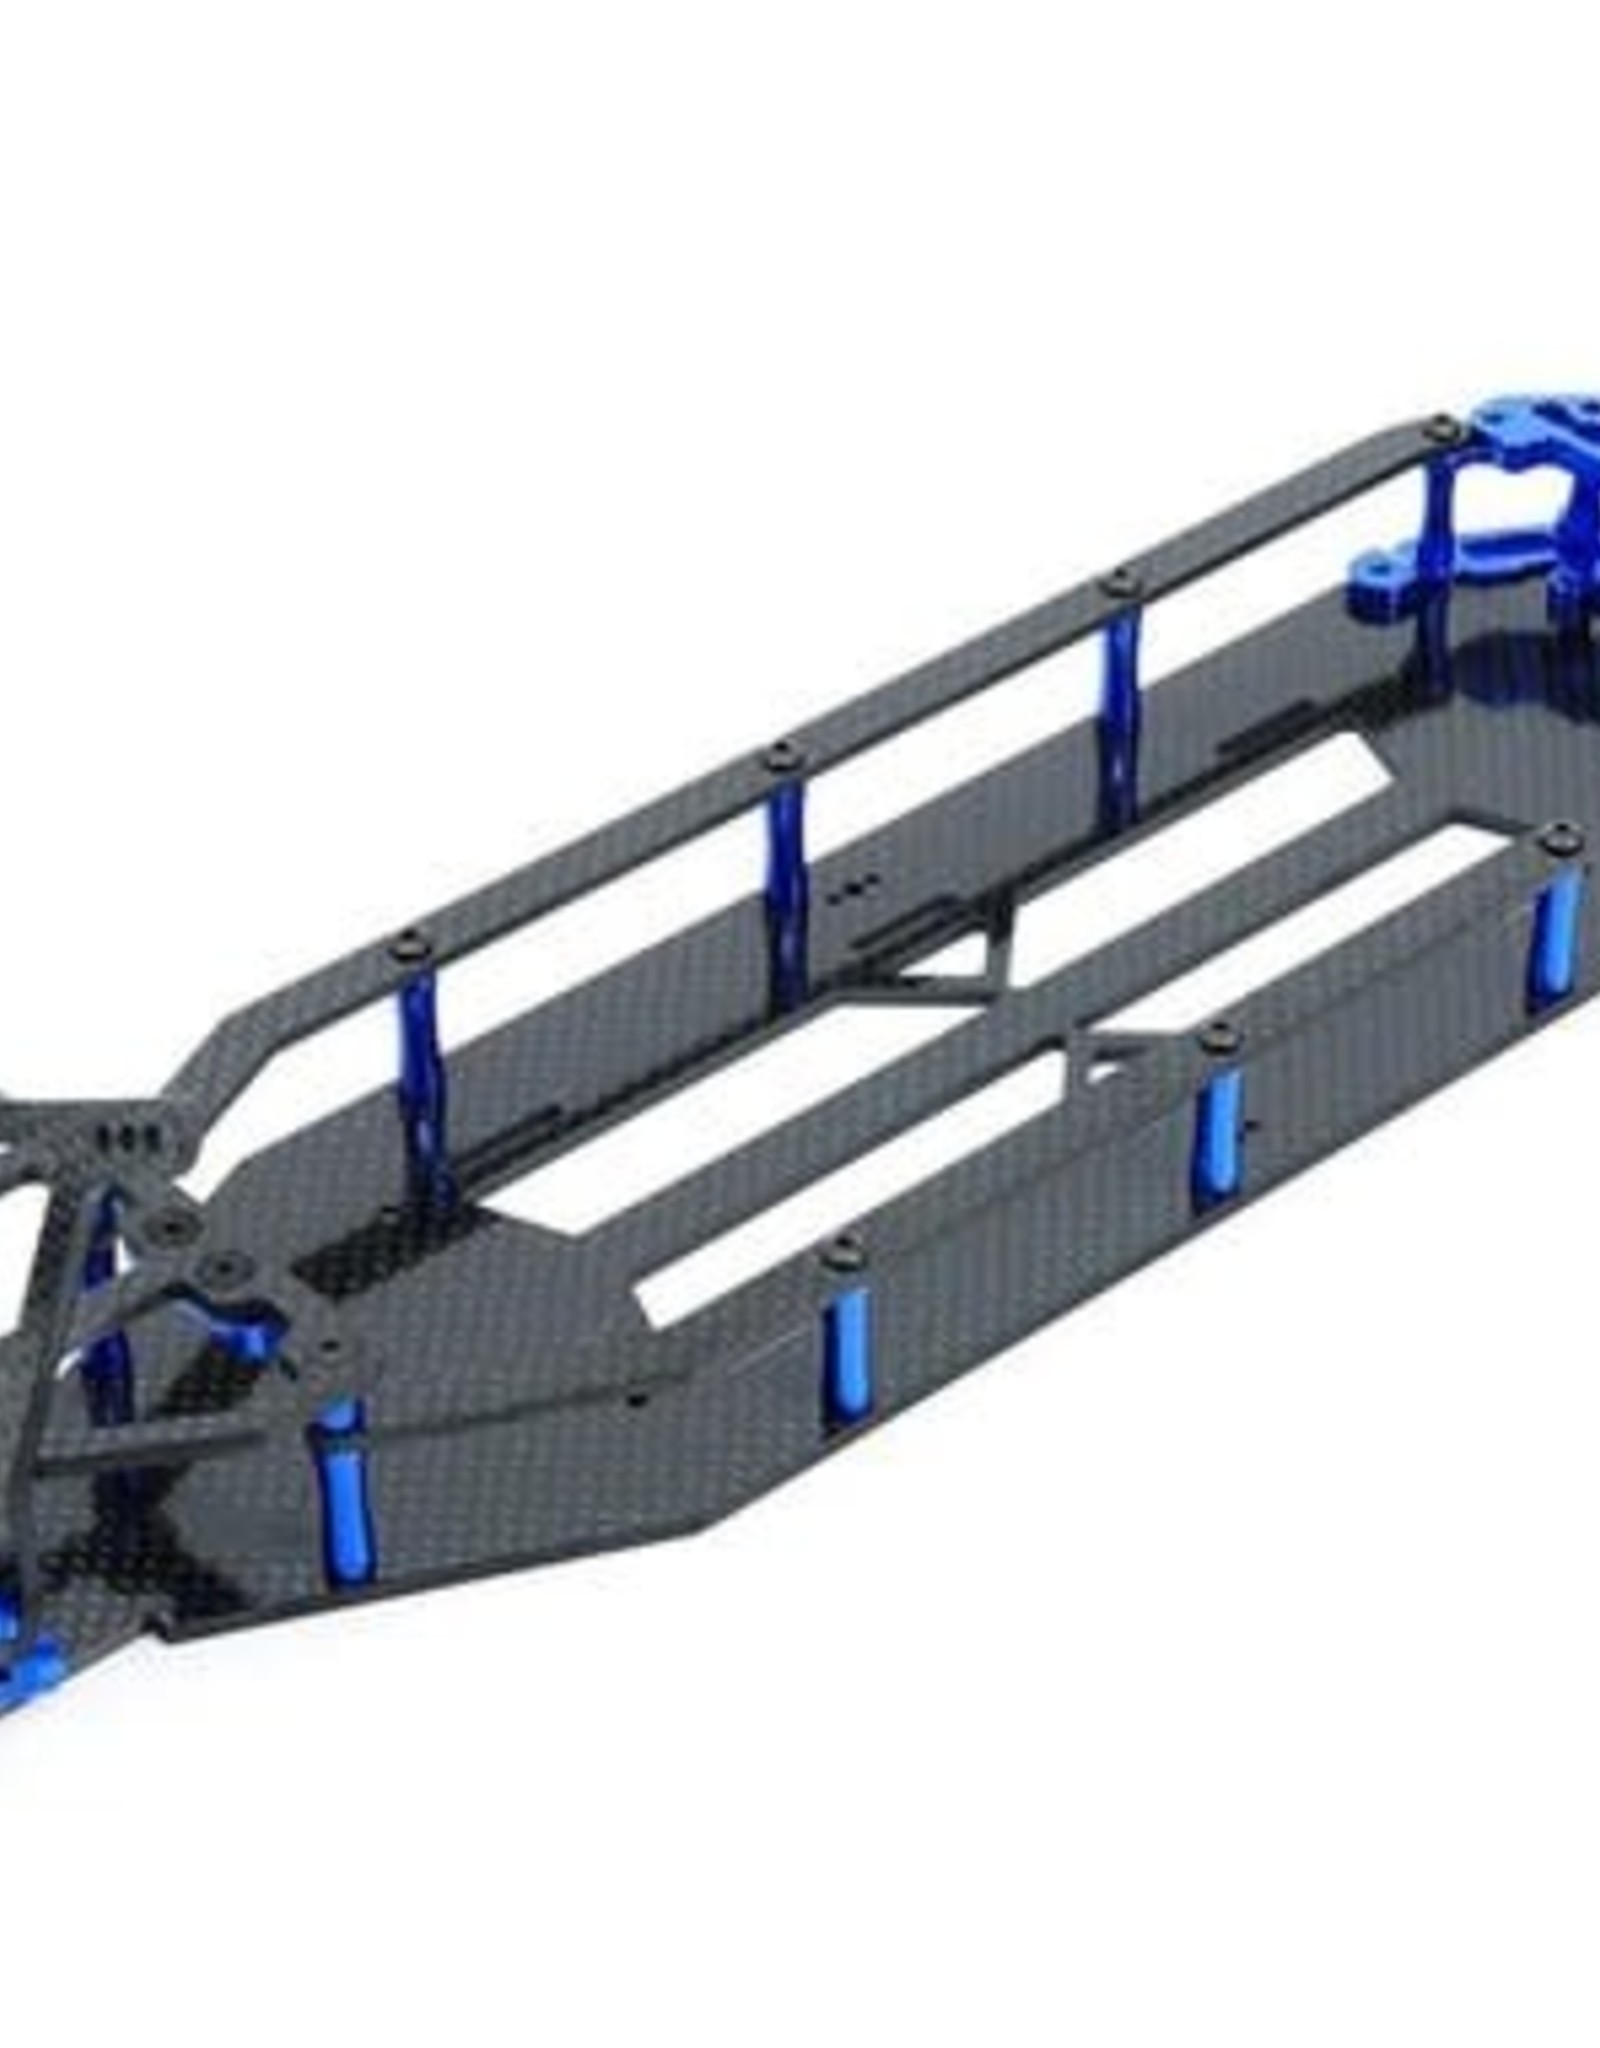 Drag Race Concepts DragRace Concepts DR10 Drag Pak "Factory Spec" Conversion Kit (Blue)